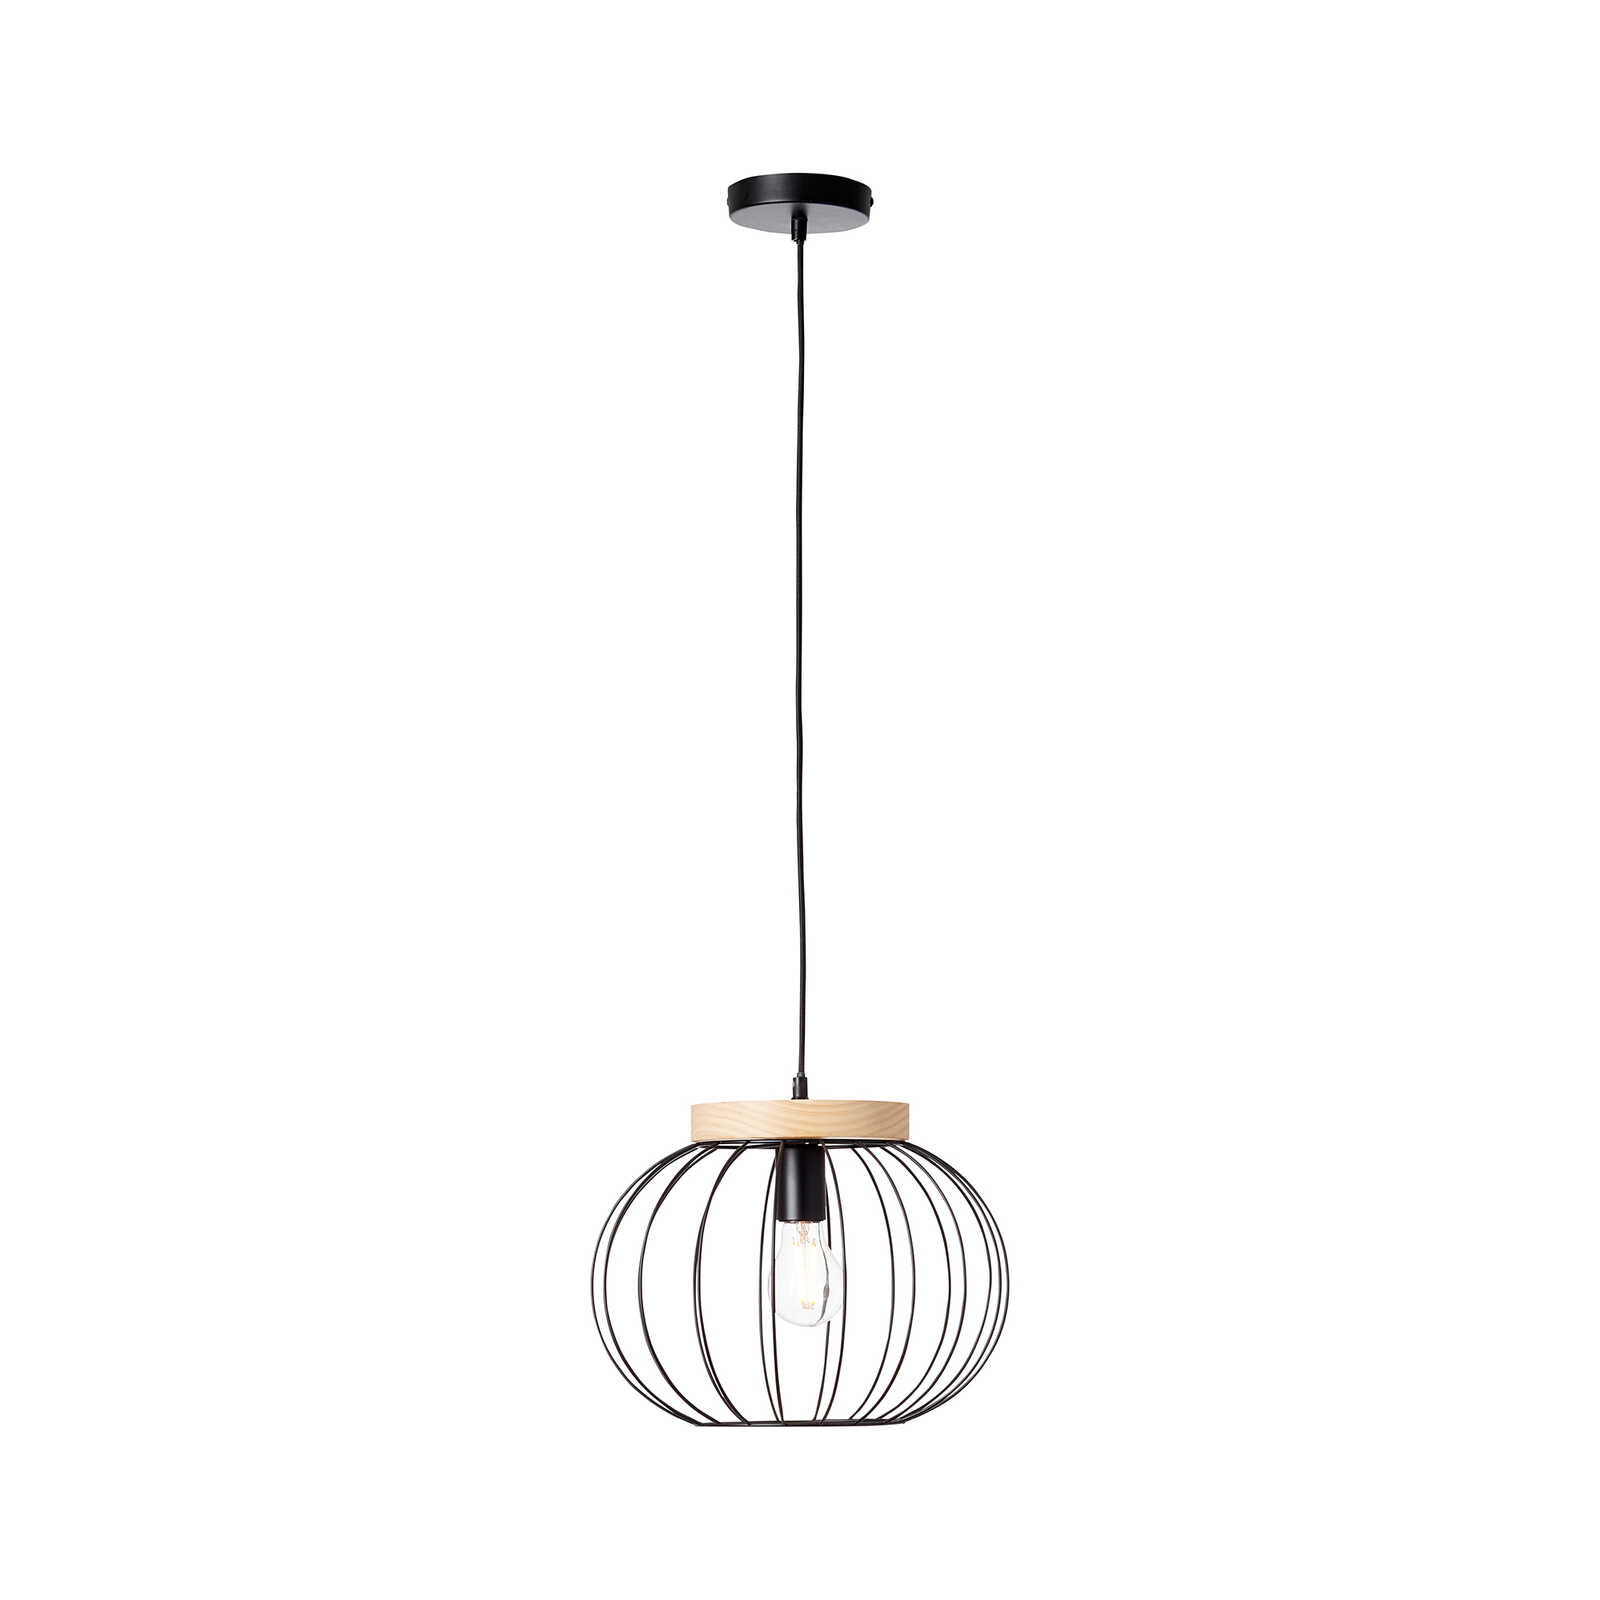 Houten hanglamp - Oliver 2 - Bruin
